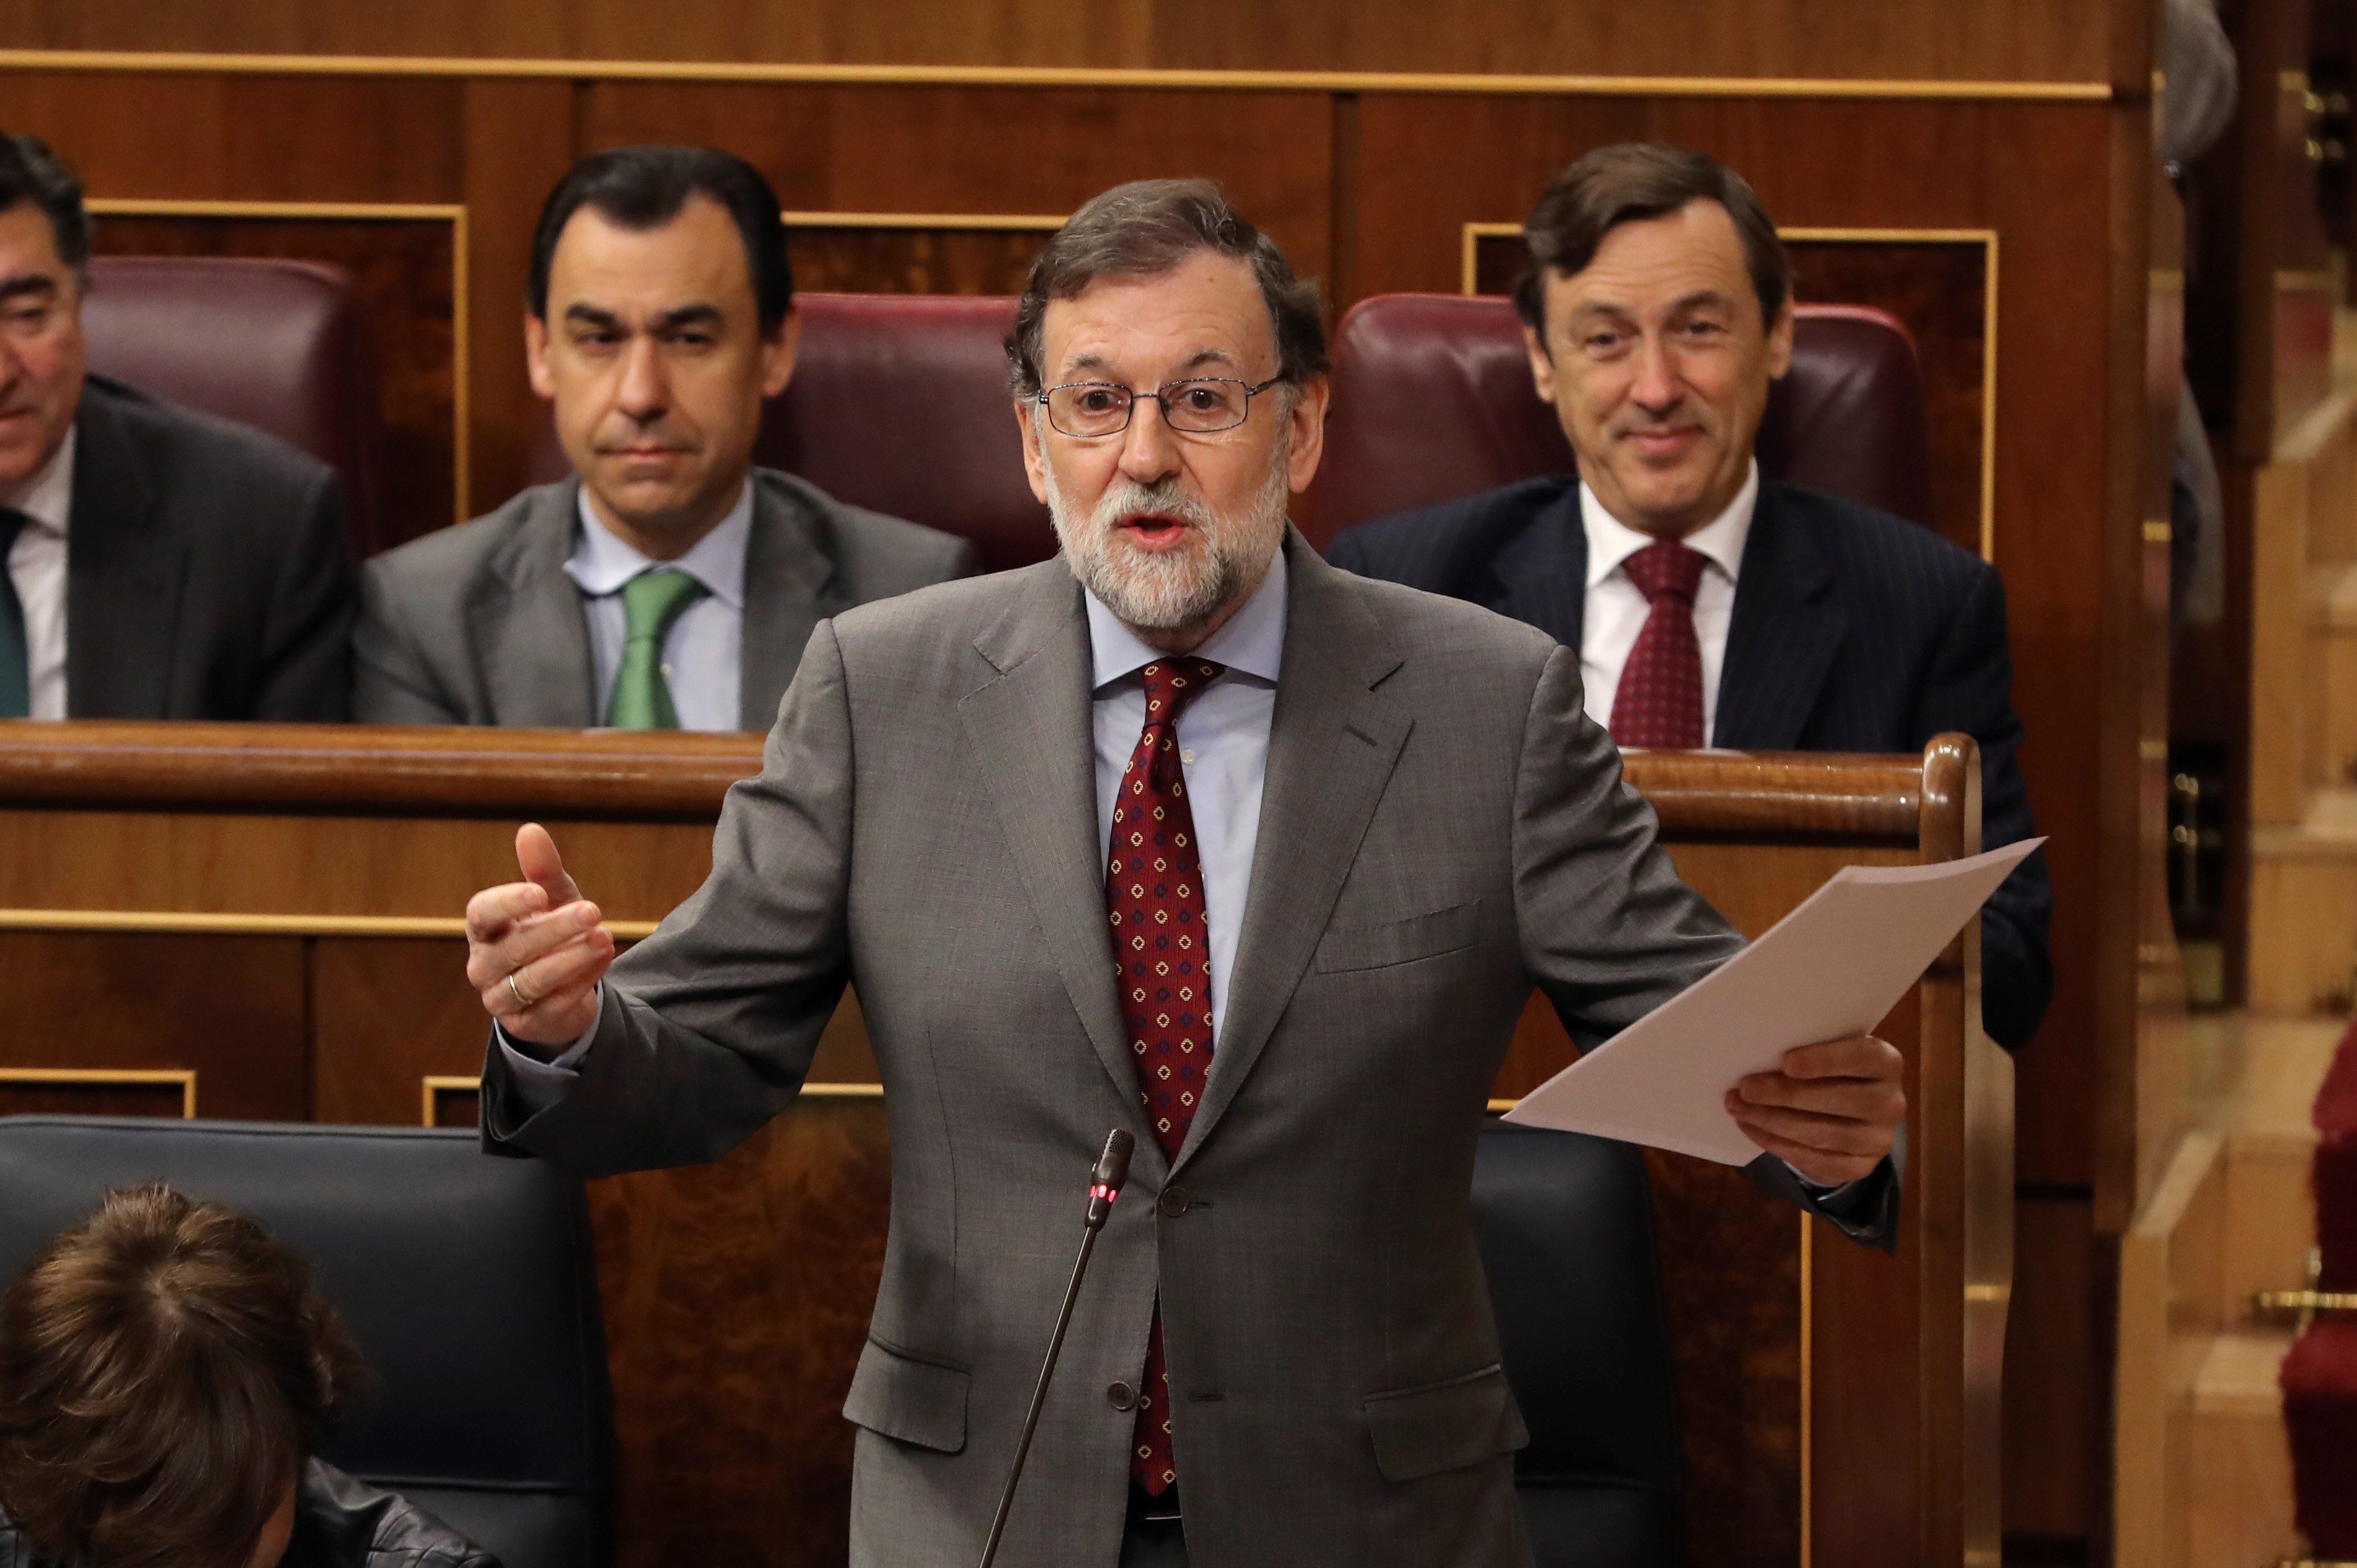 Rajoy avala el ascenso del coronel del 1-O: "No hubo violencia gratuita"